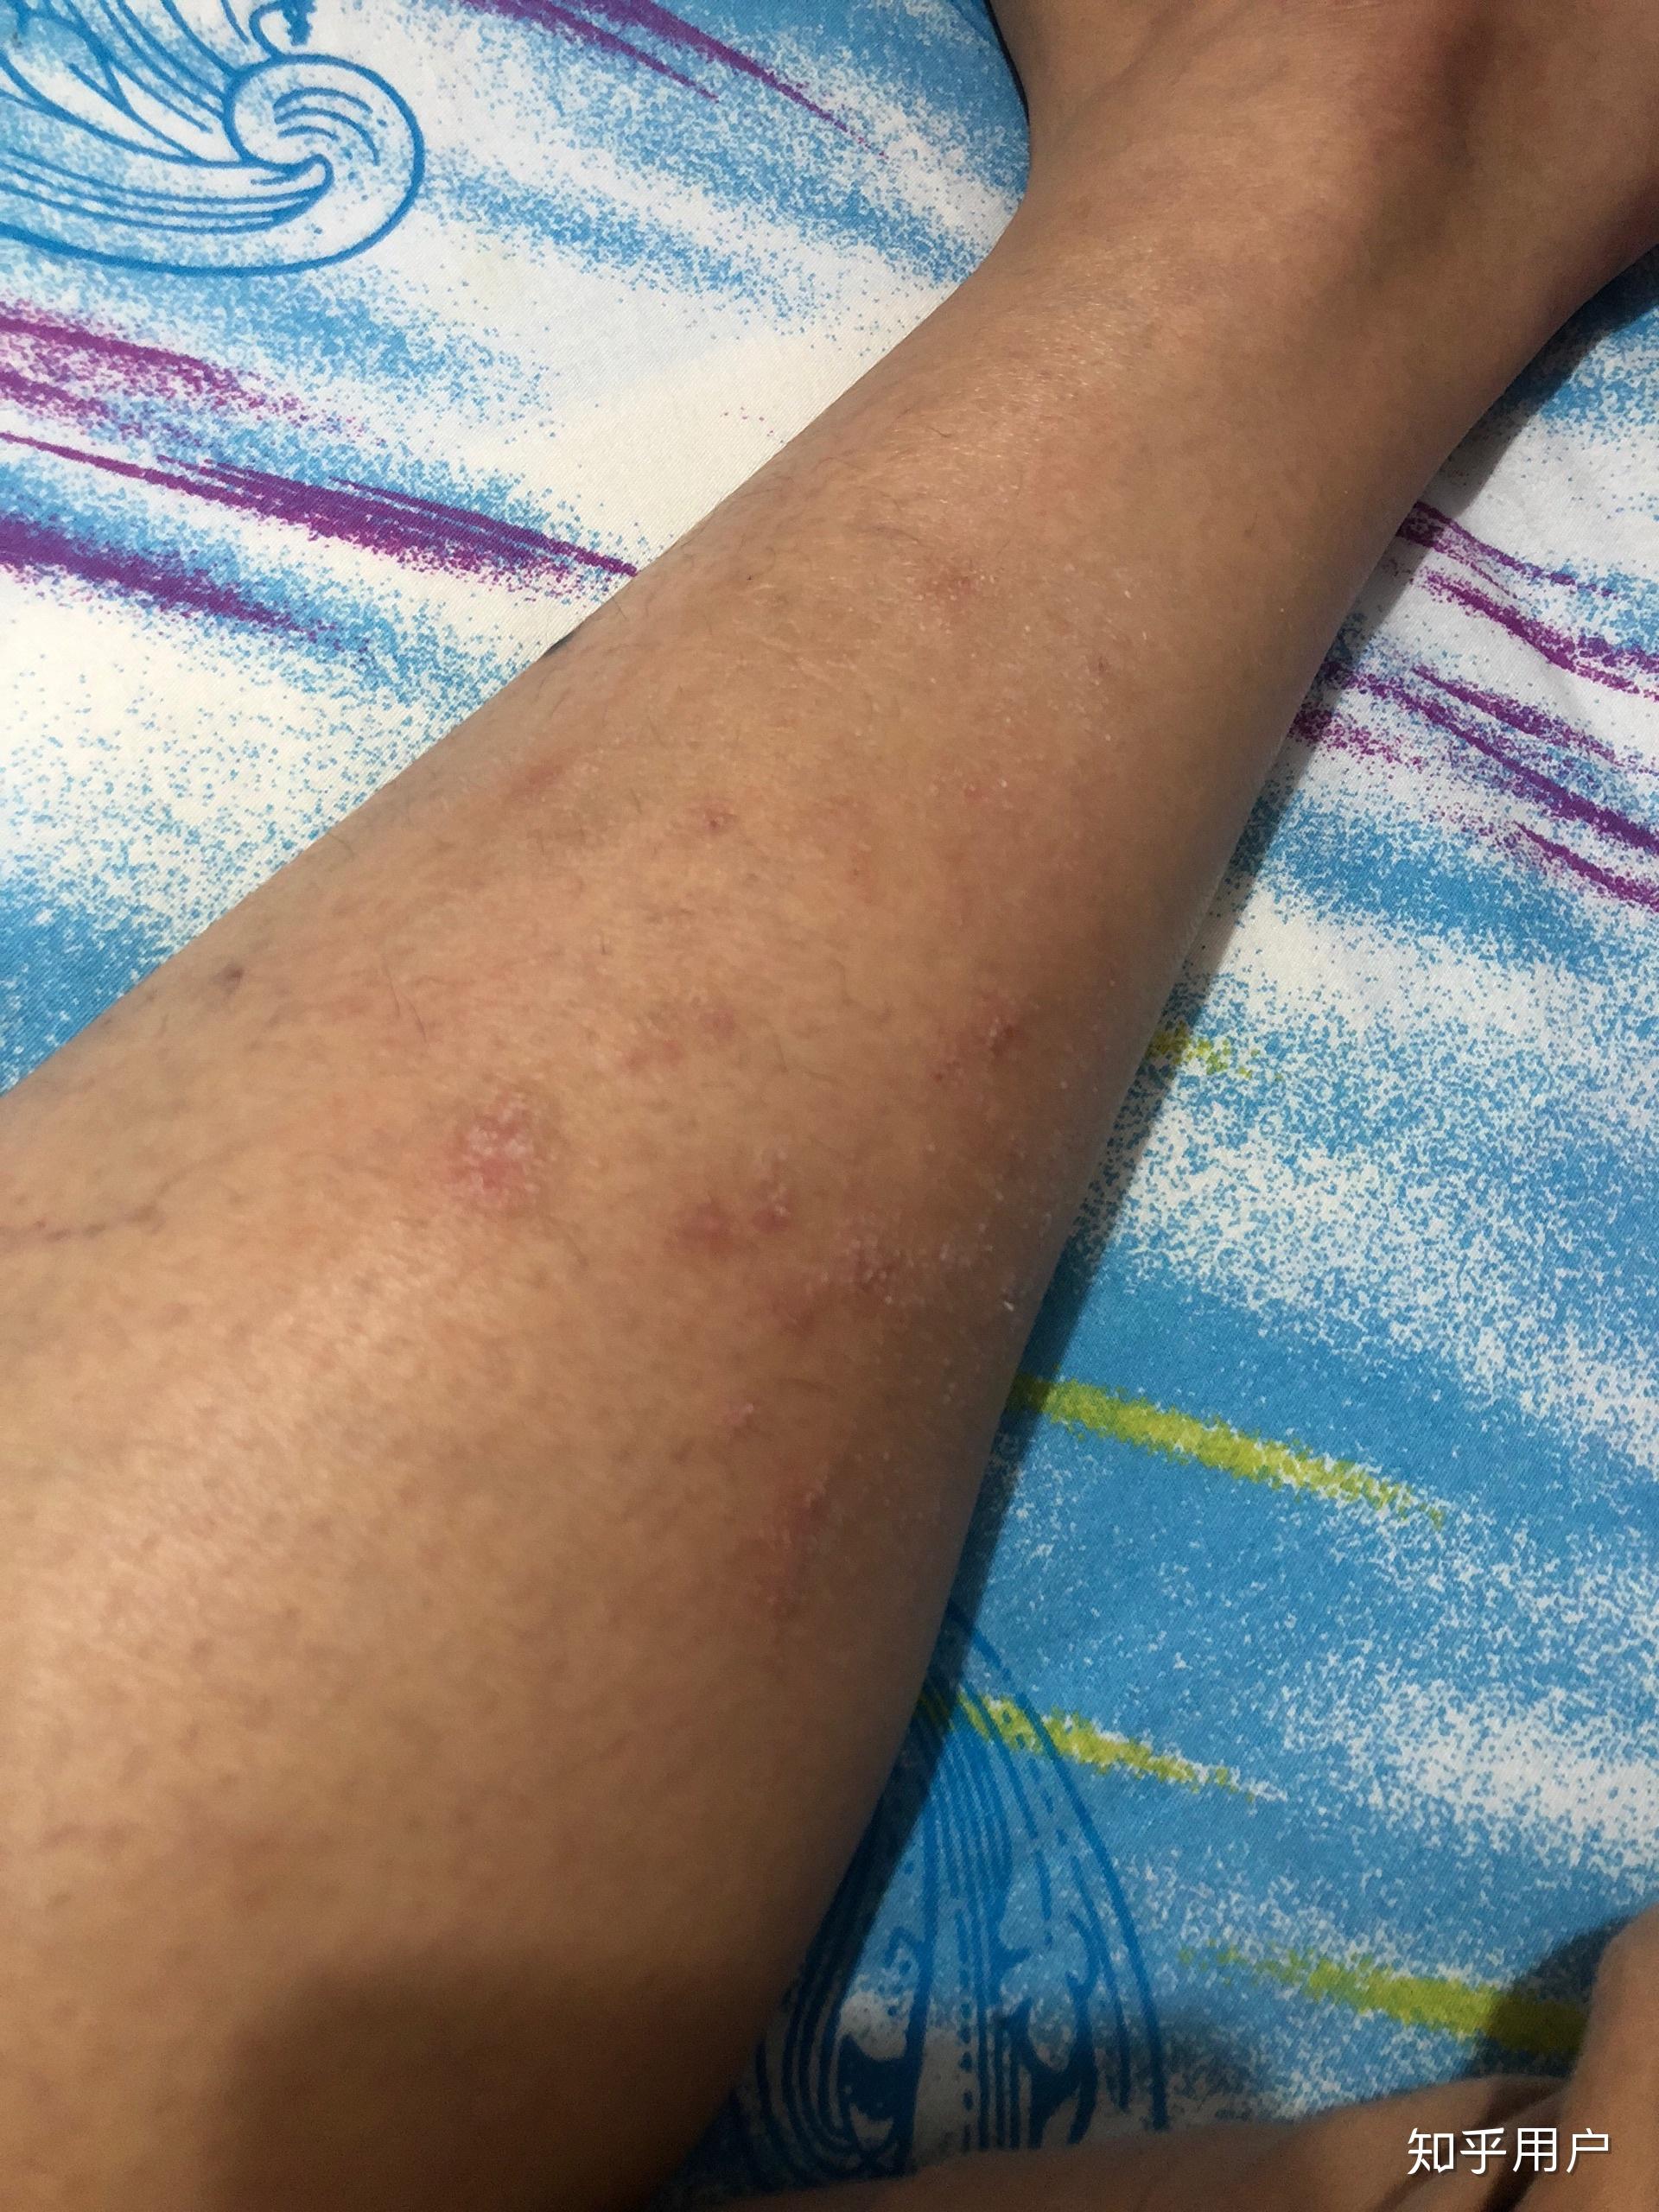 小腿特别痒持续了两个月了一直不好越挠越痒挠破皮结了一腿的疤